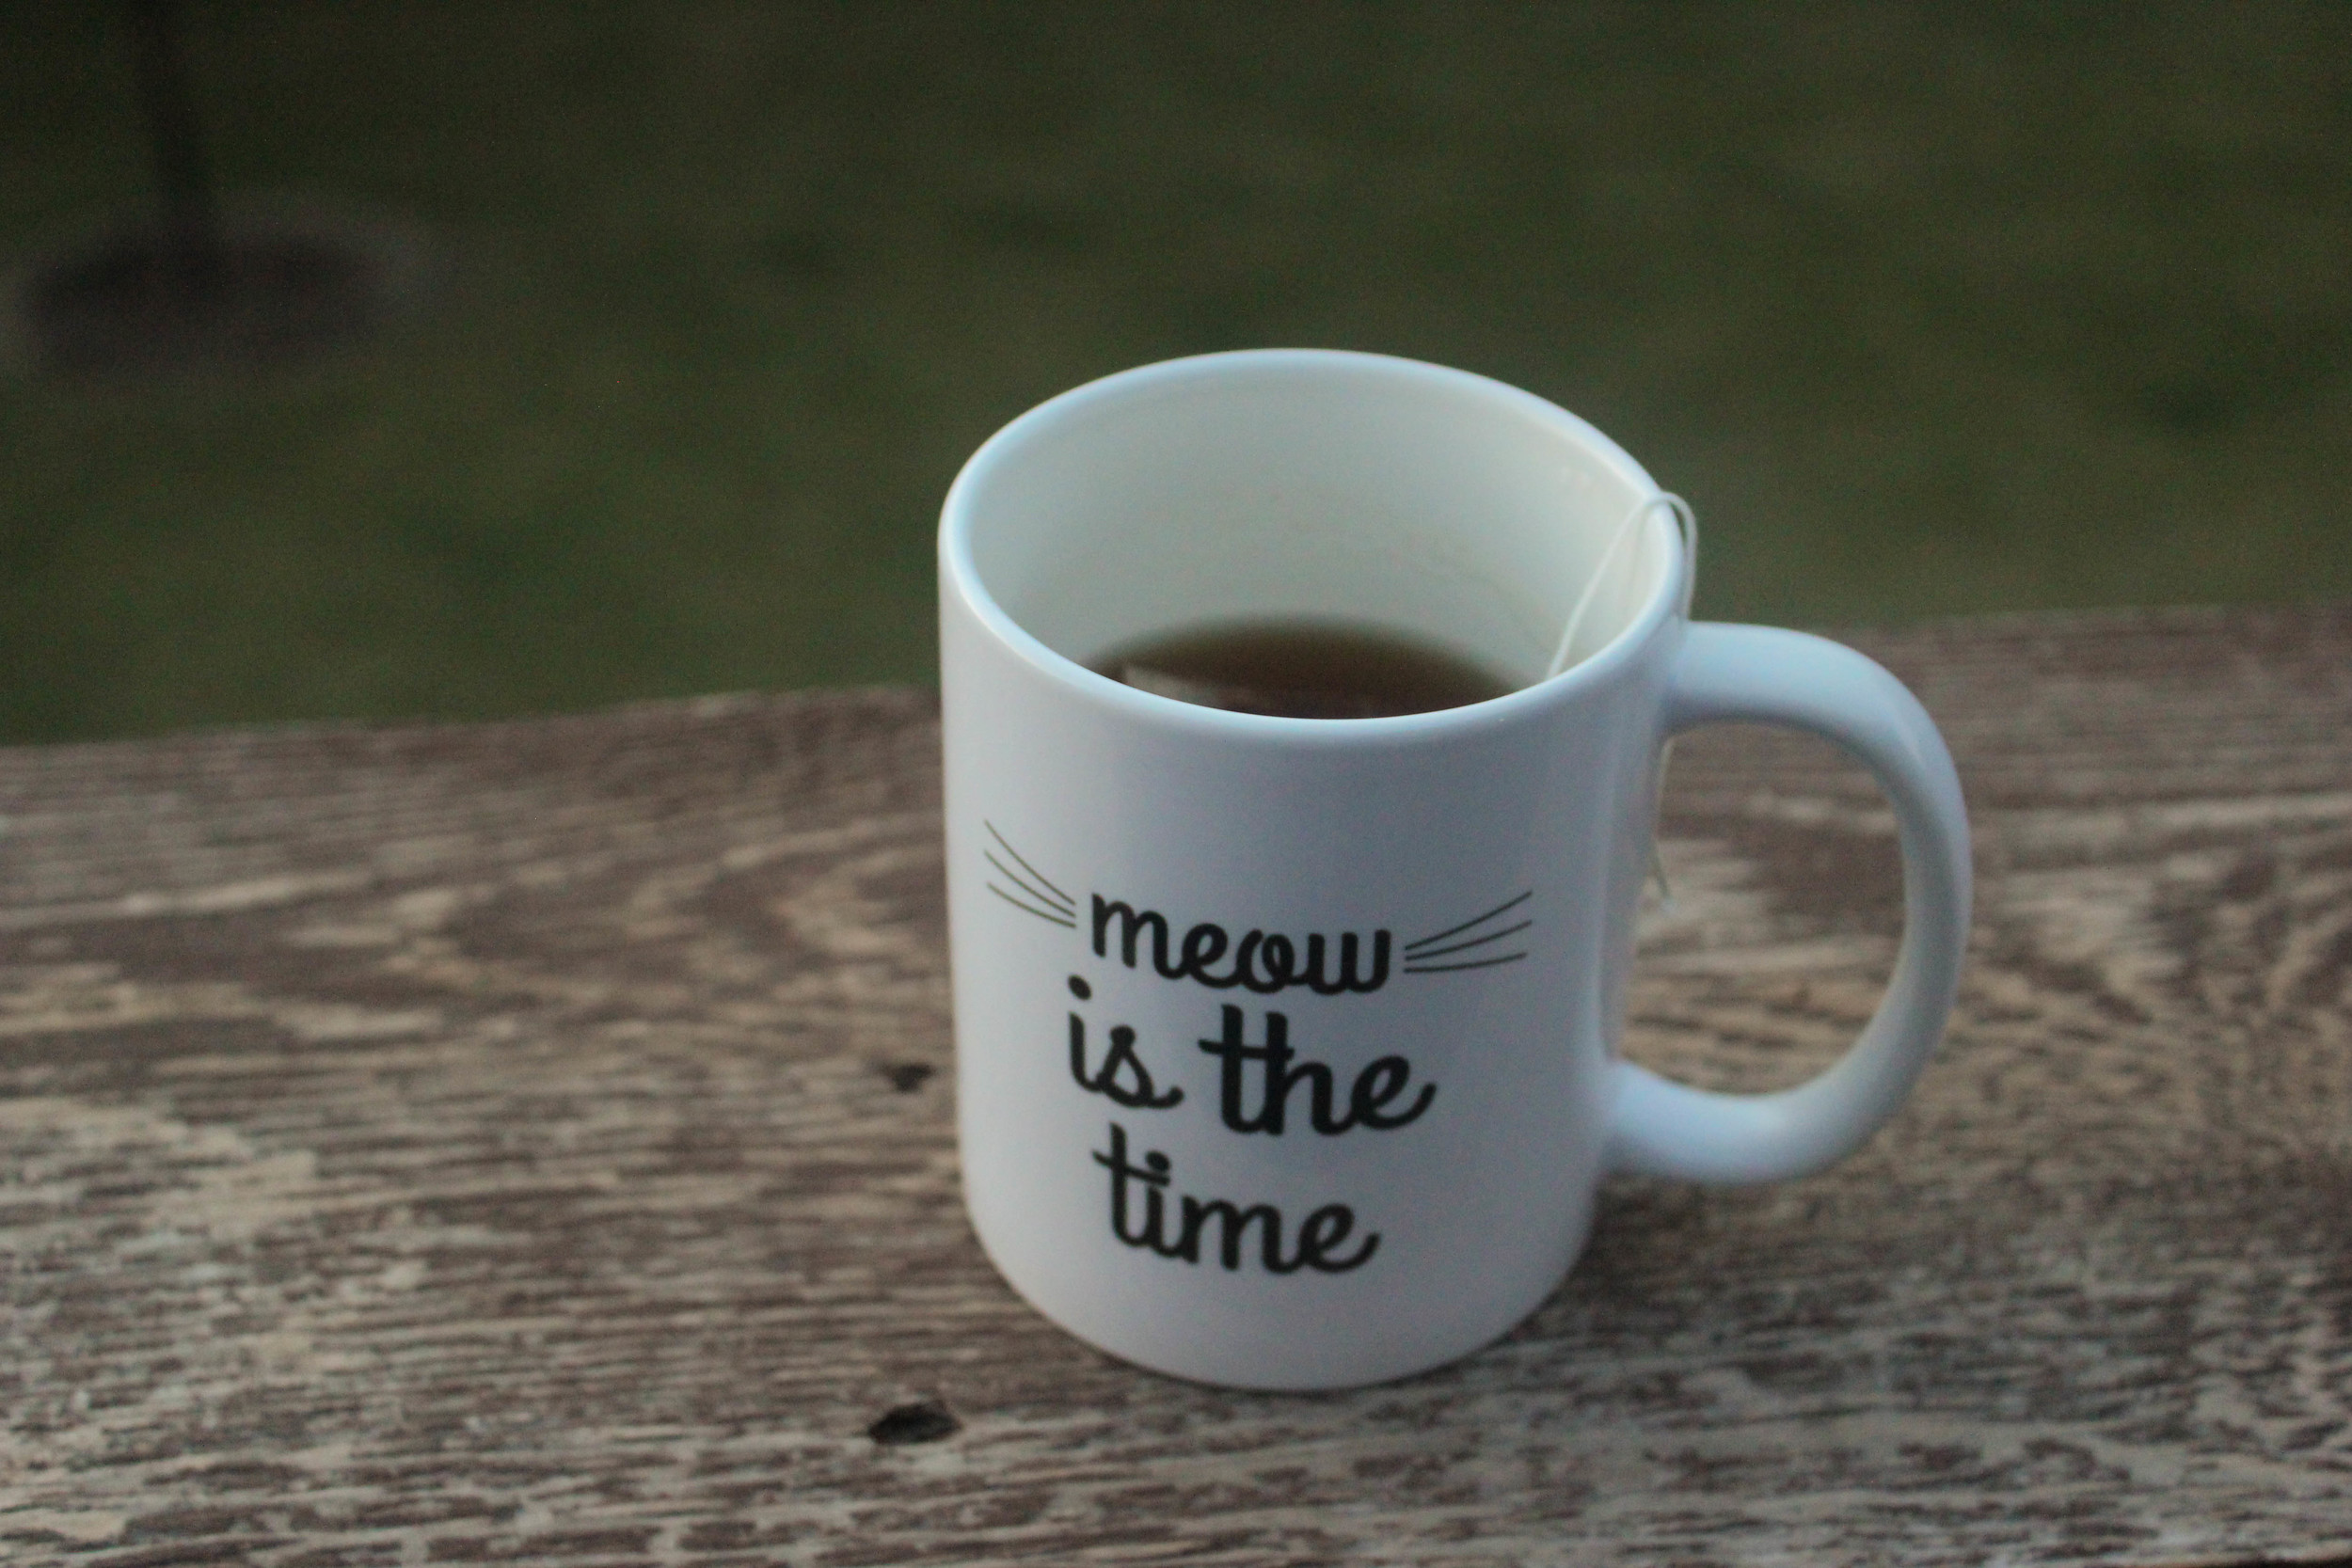 meow is the time mug